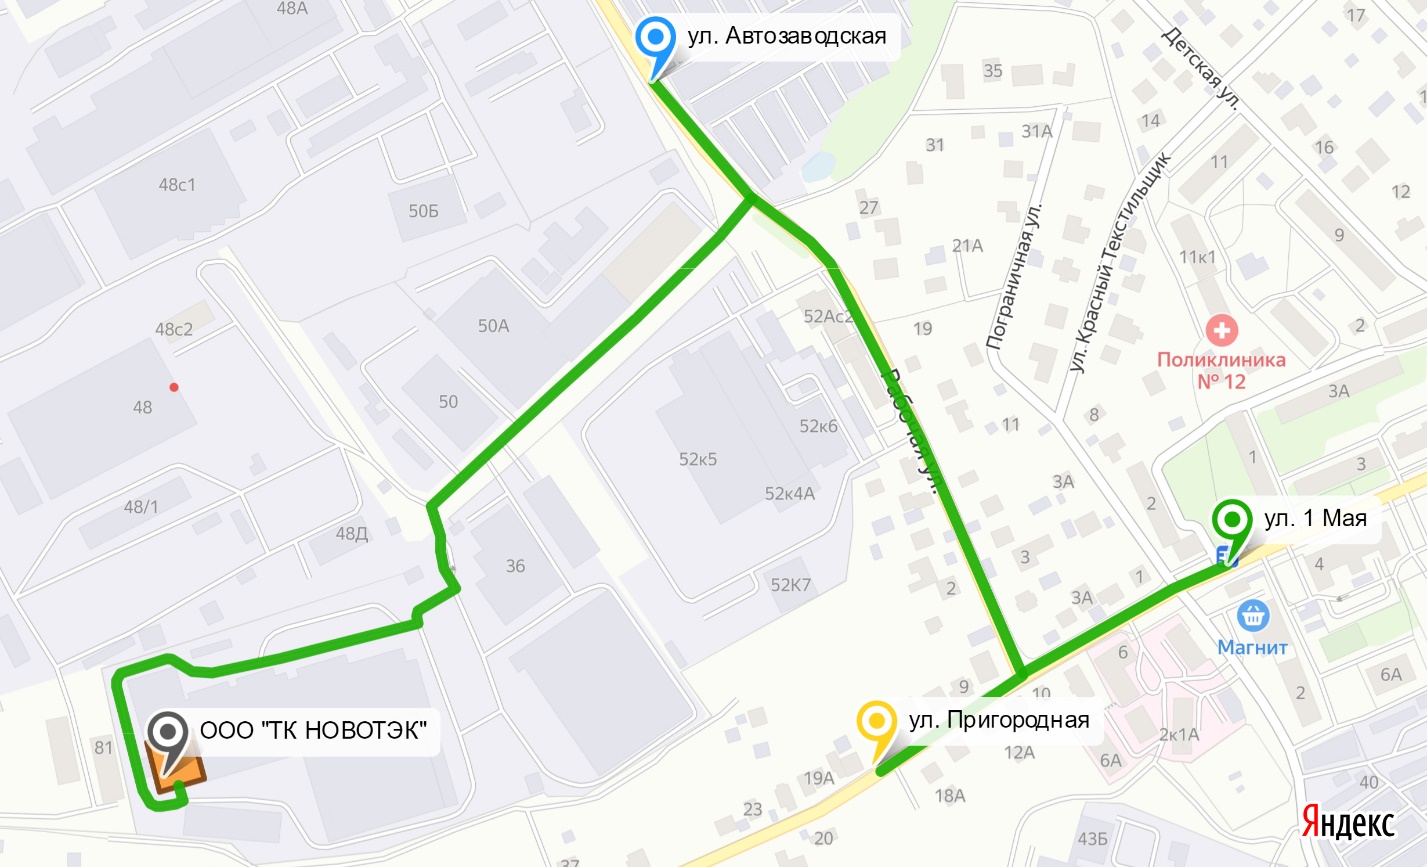 Схема проезда - Москва